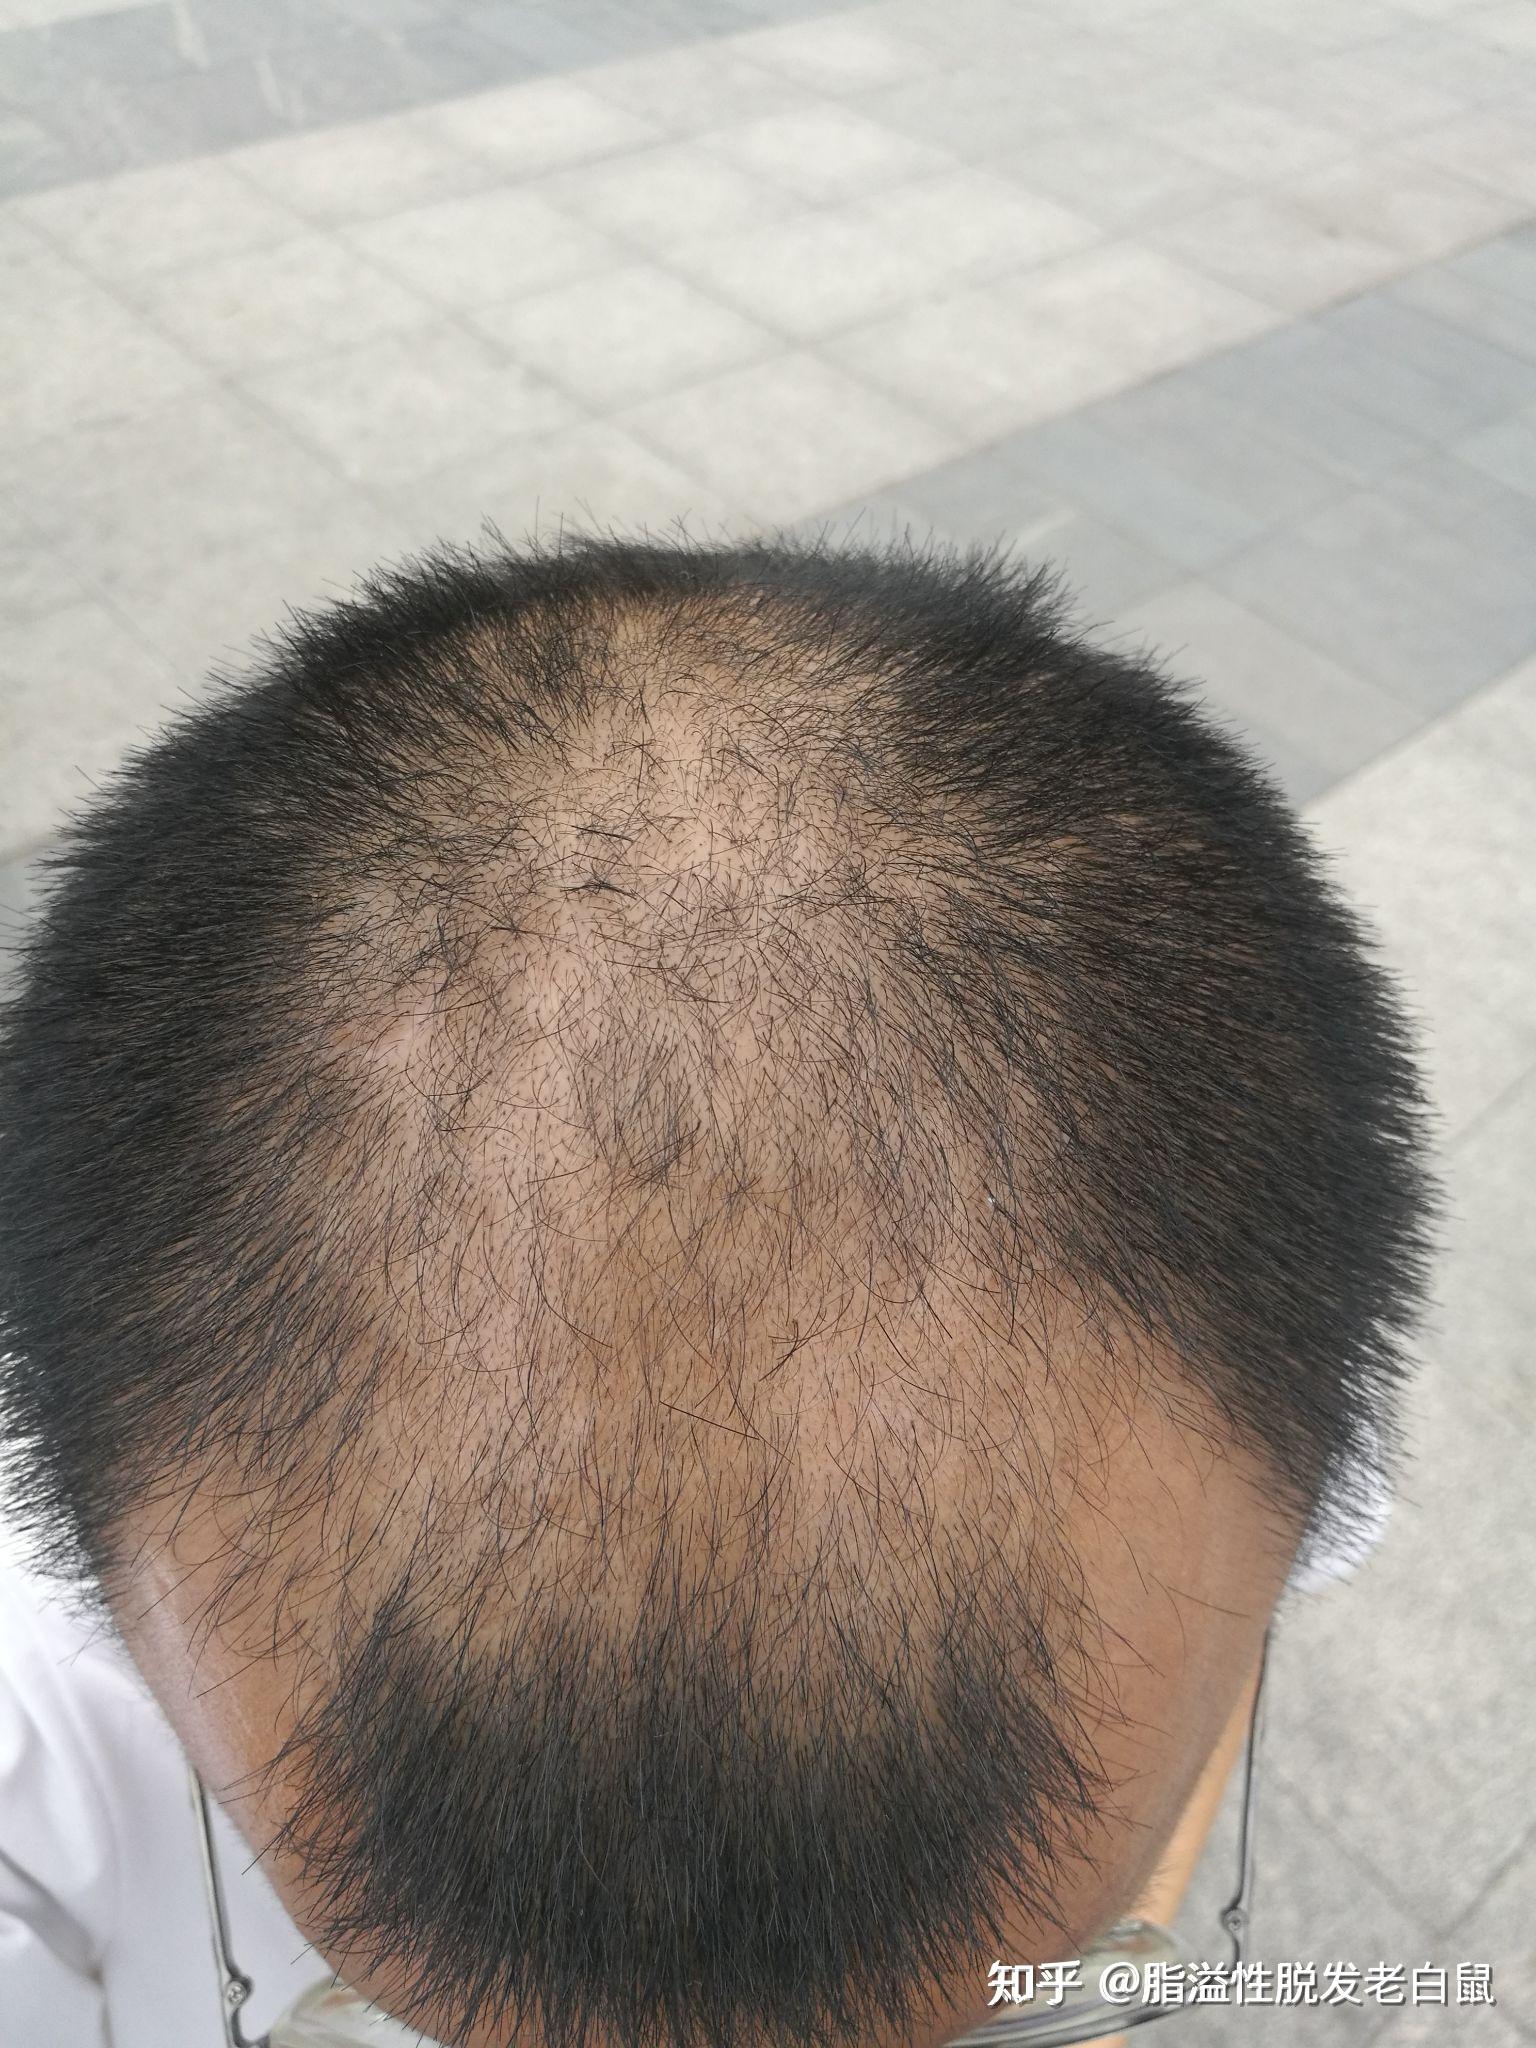 我是典型的脂溢性脱发,症状为:先是前额两侧后移成v形额角,然后头顶